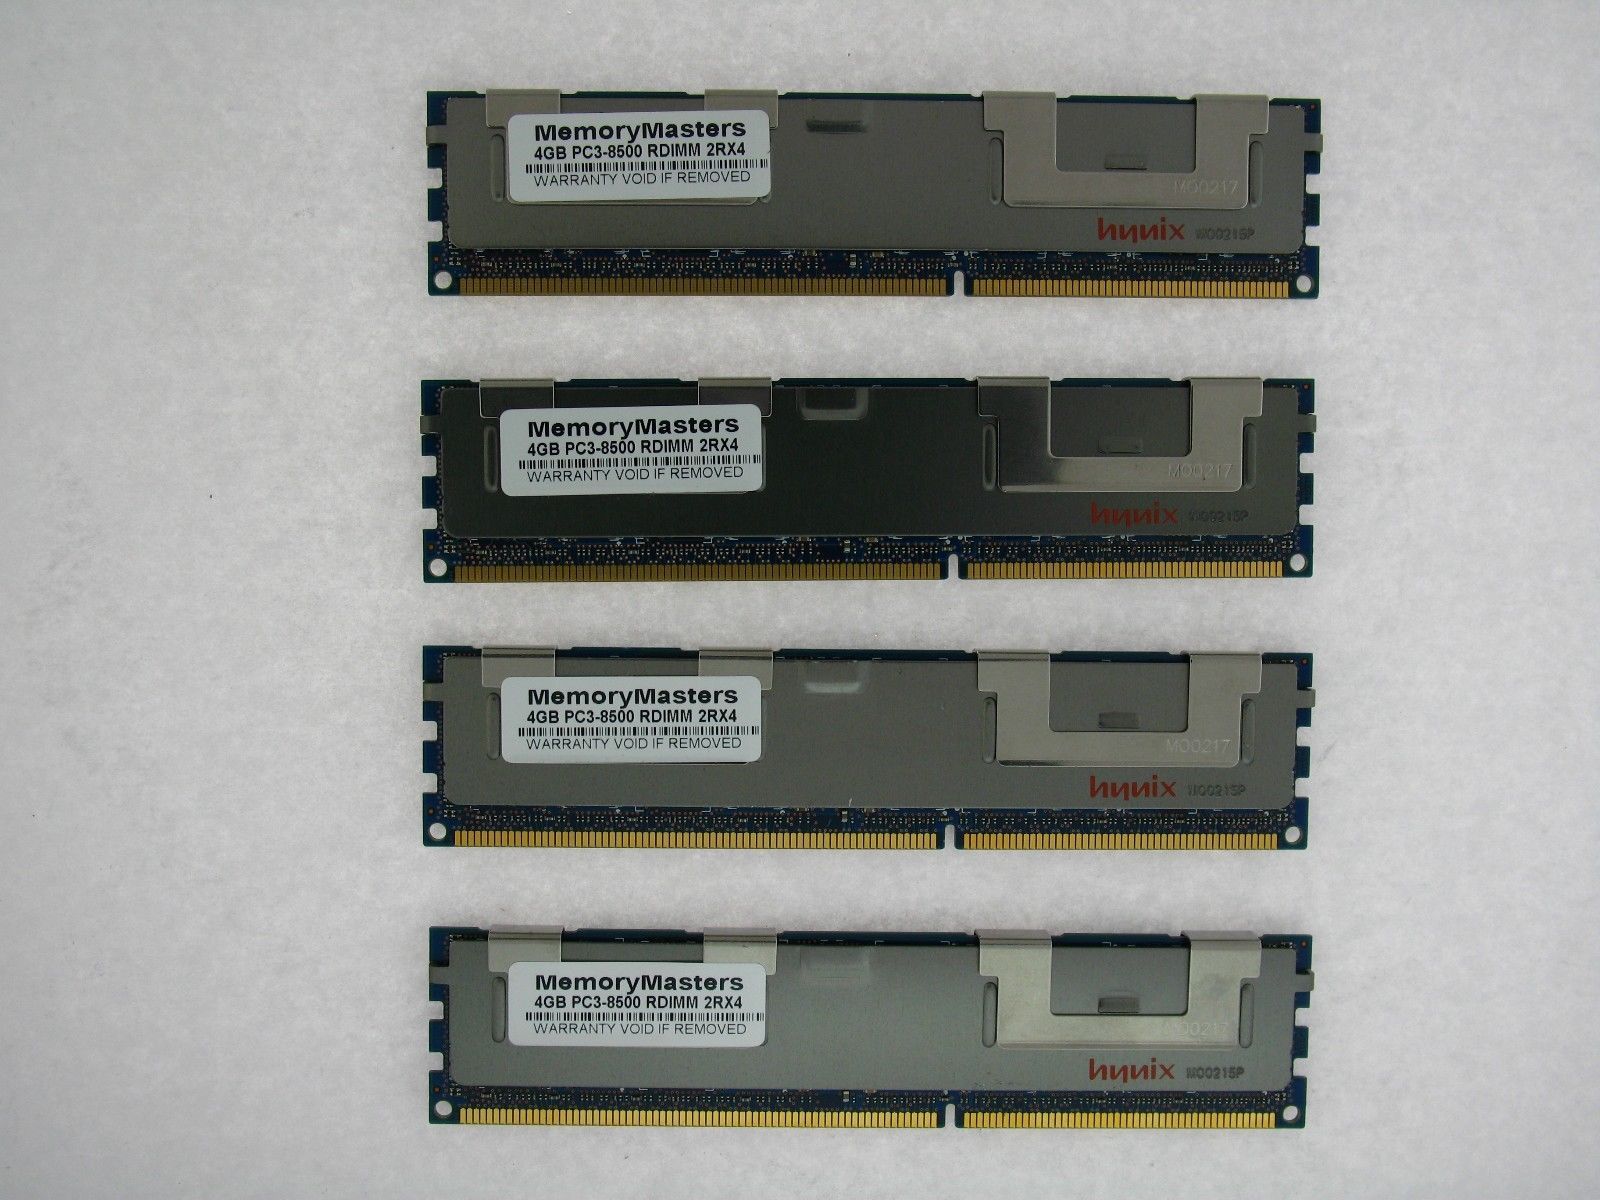 DDR3 PC3L-10600R ECC Server Memory RAM for IBM ThinkServer RD330 6x8GB 48GB